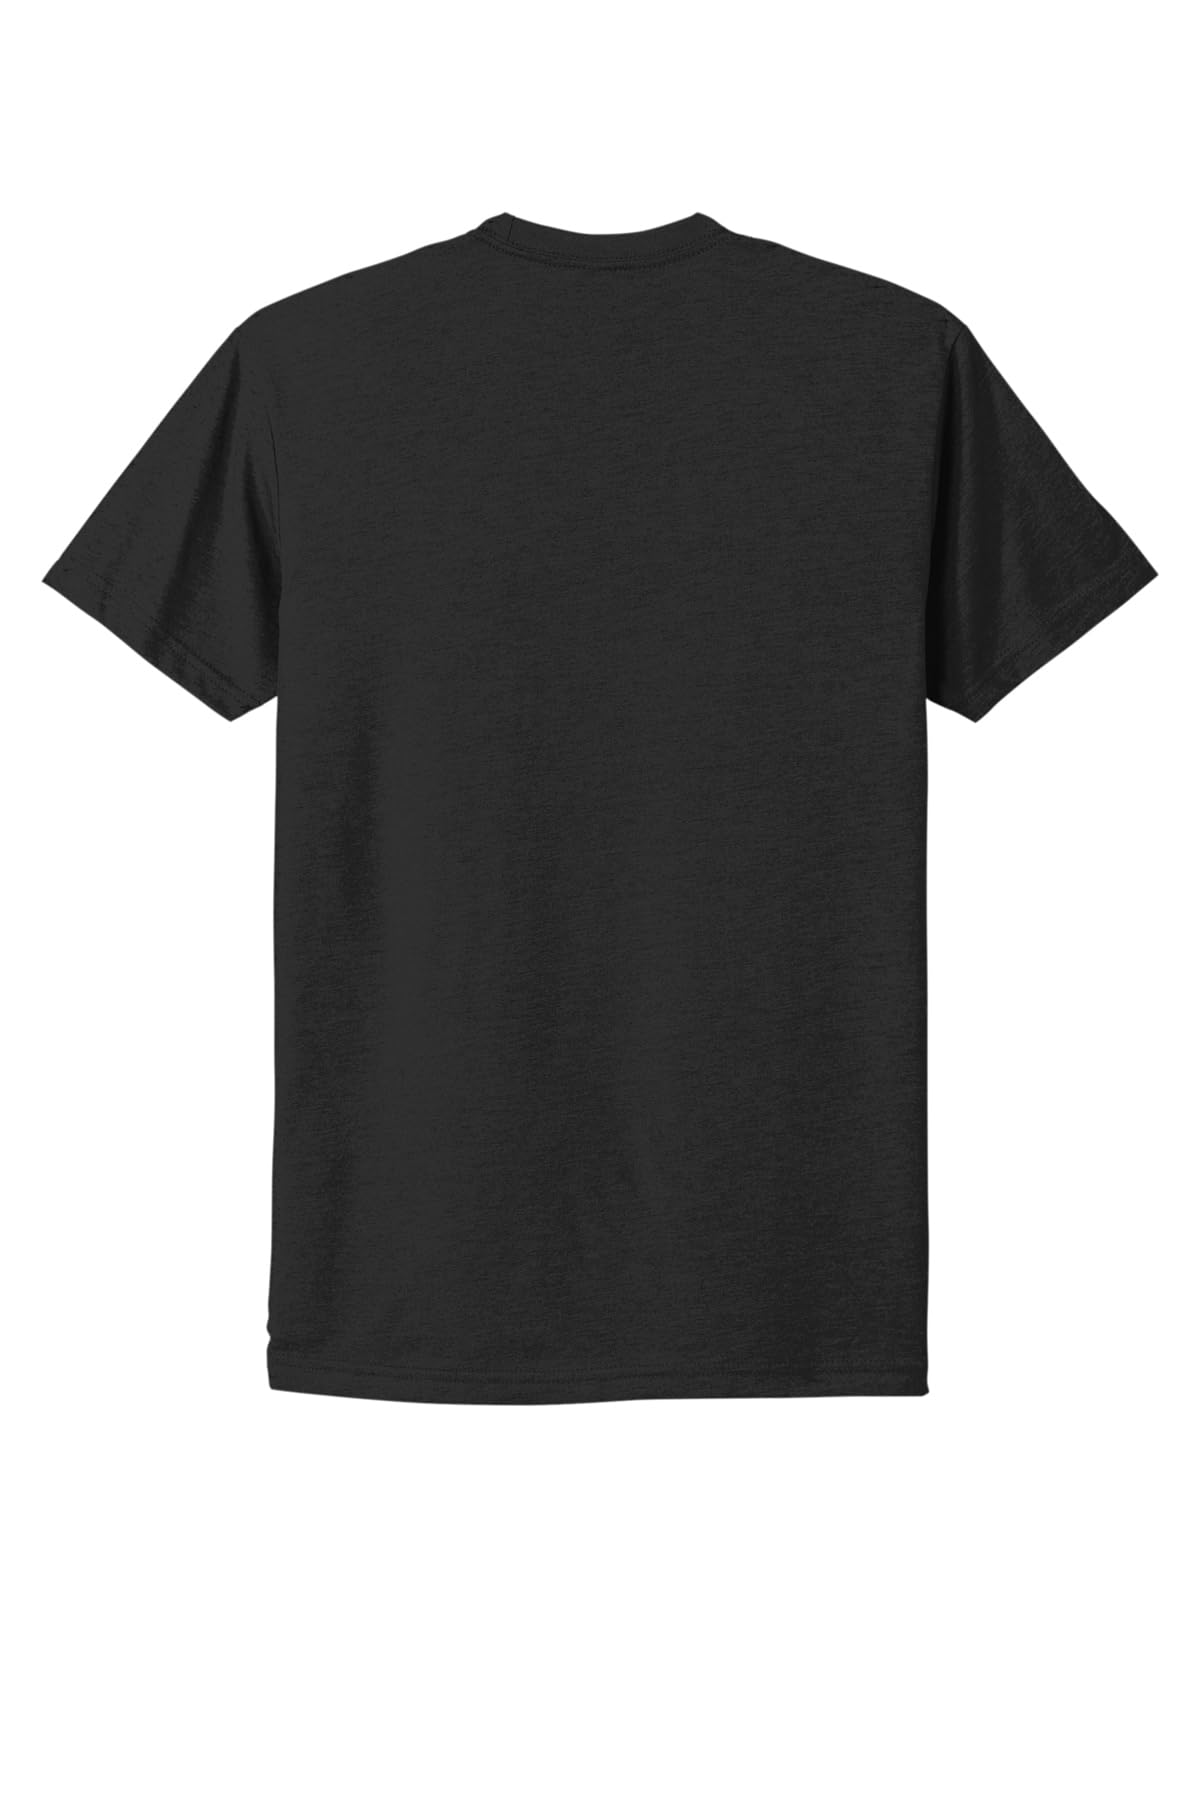 Next Level Men's Baby Rib Collar Premium CVC T-Shirt